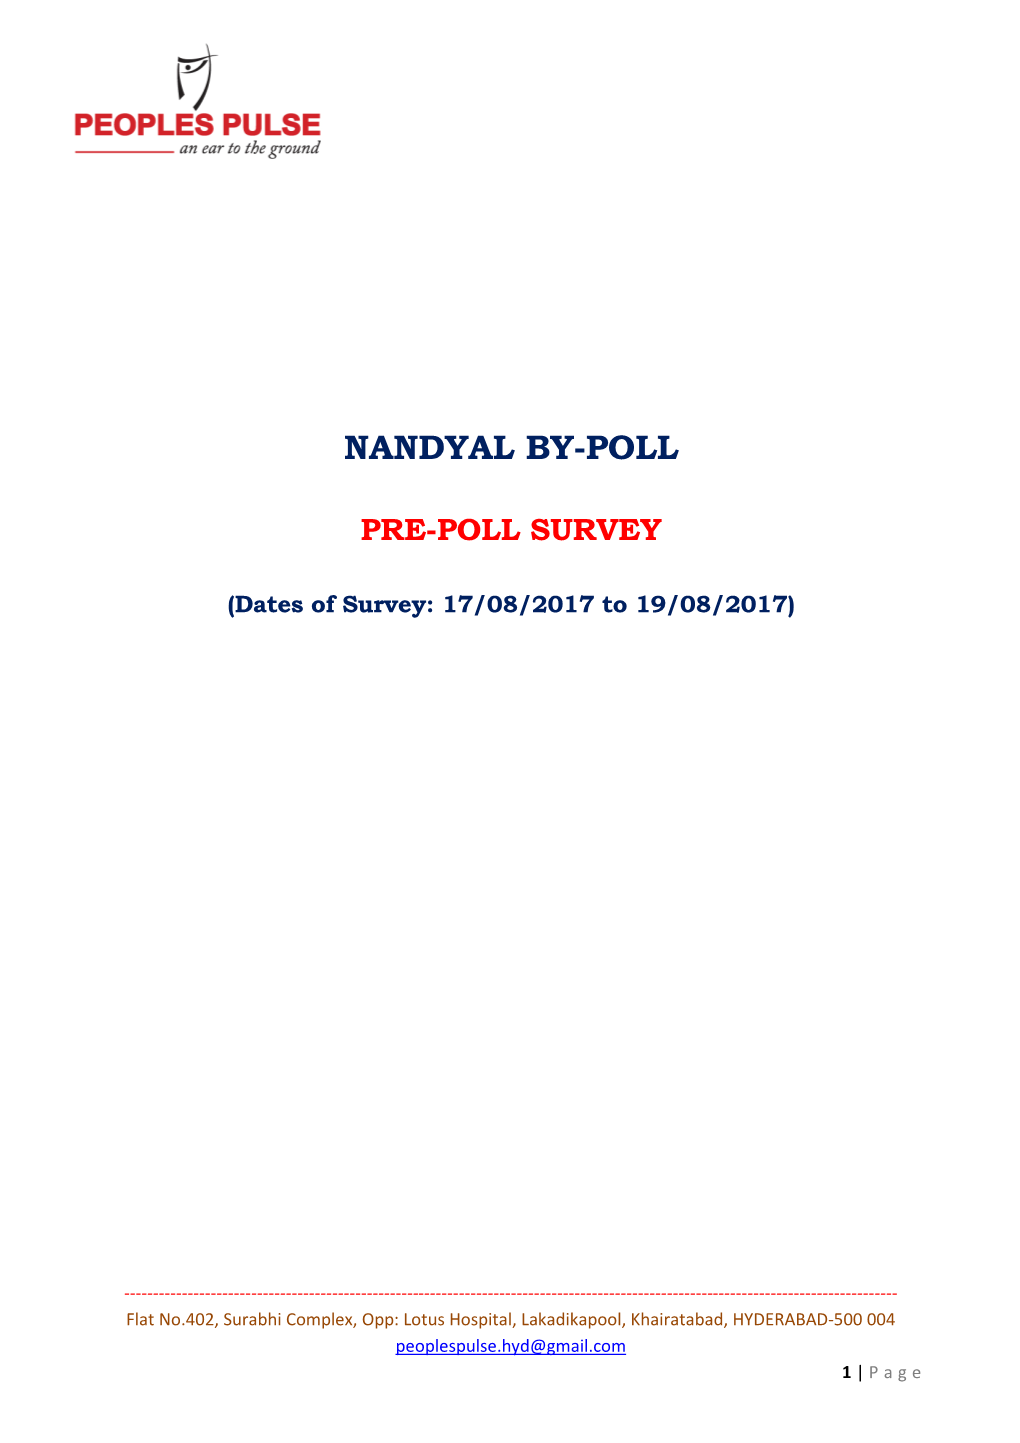 Nandhyal Pre-Poll Survey